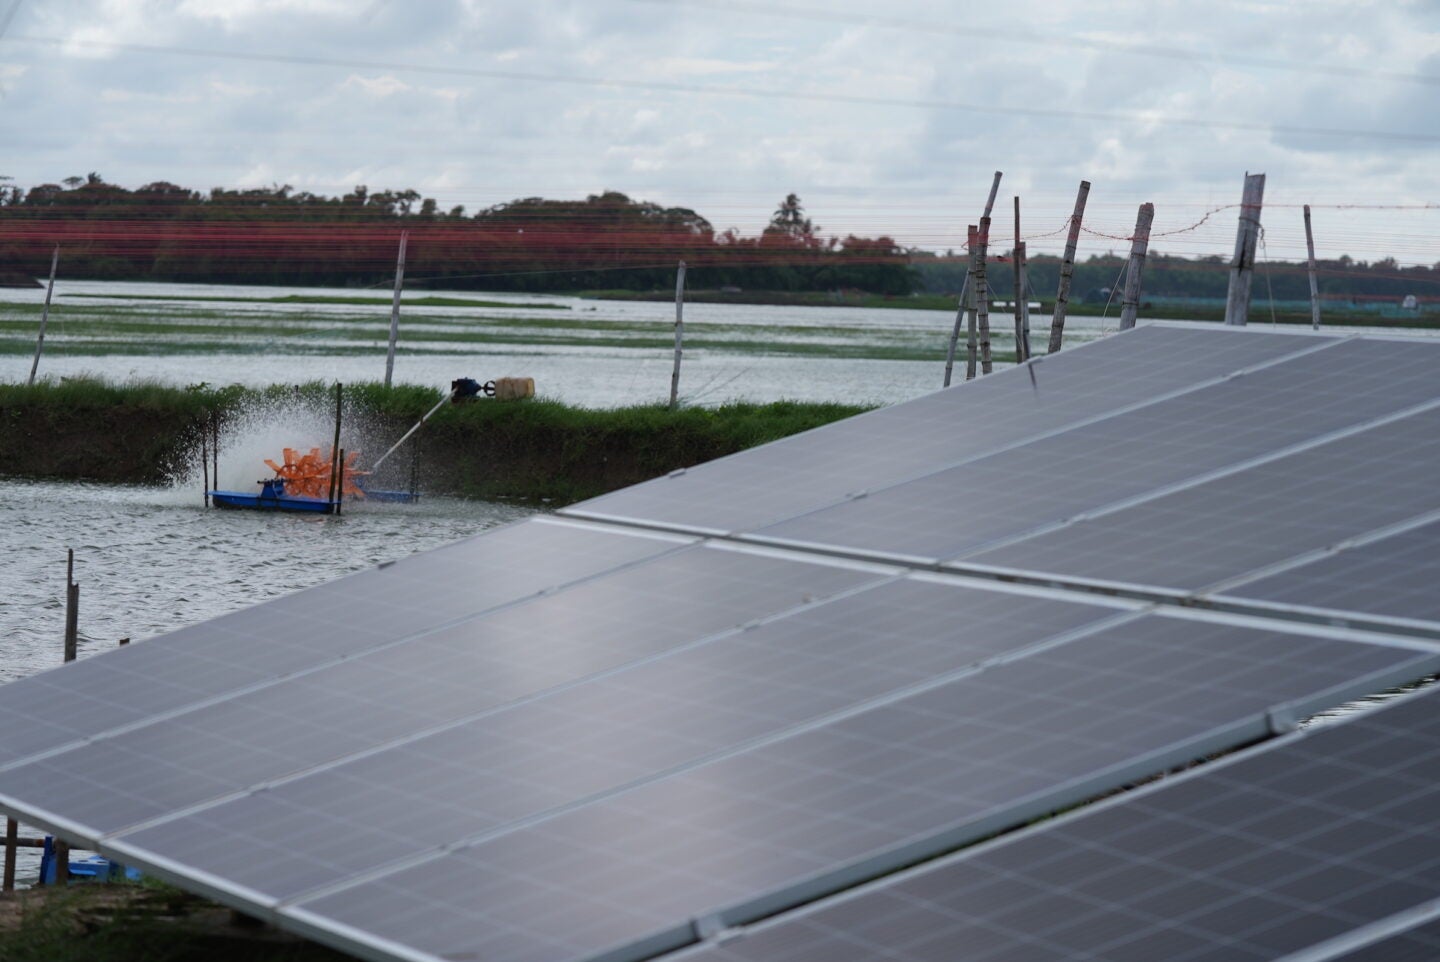 Aerator powered by solar in Paradeep, Odisha in 2022 (Photo Courtesy of SPI)